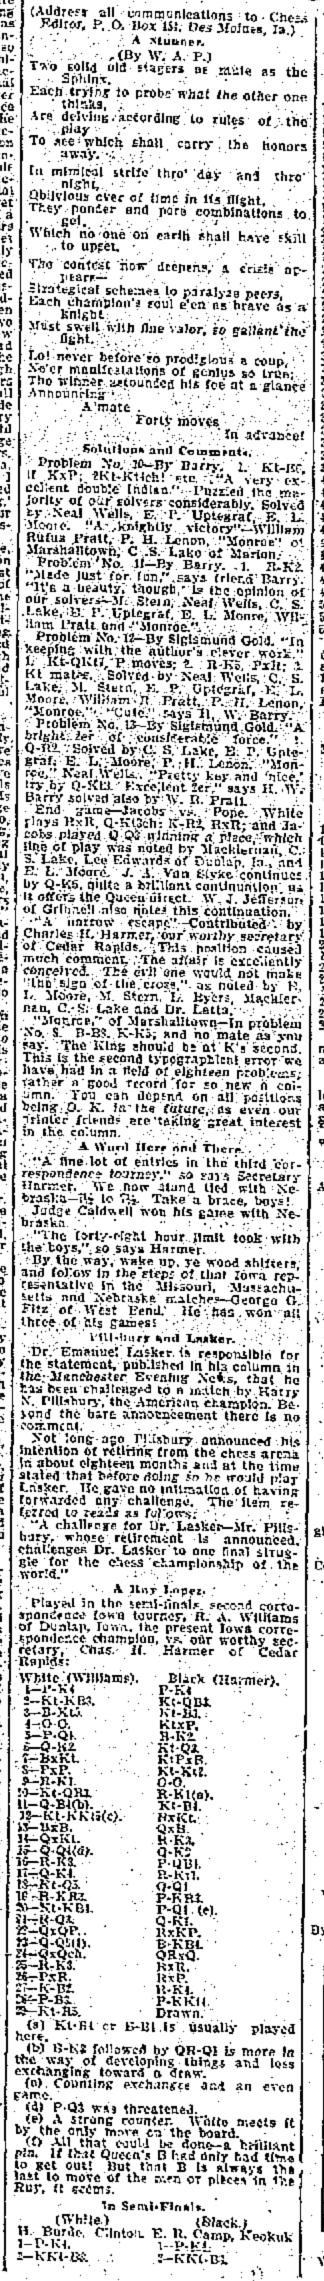 1901.09.19-02 Des Moines Weekly Leader.jpg